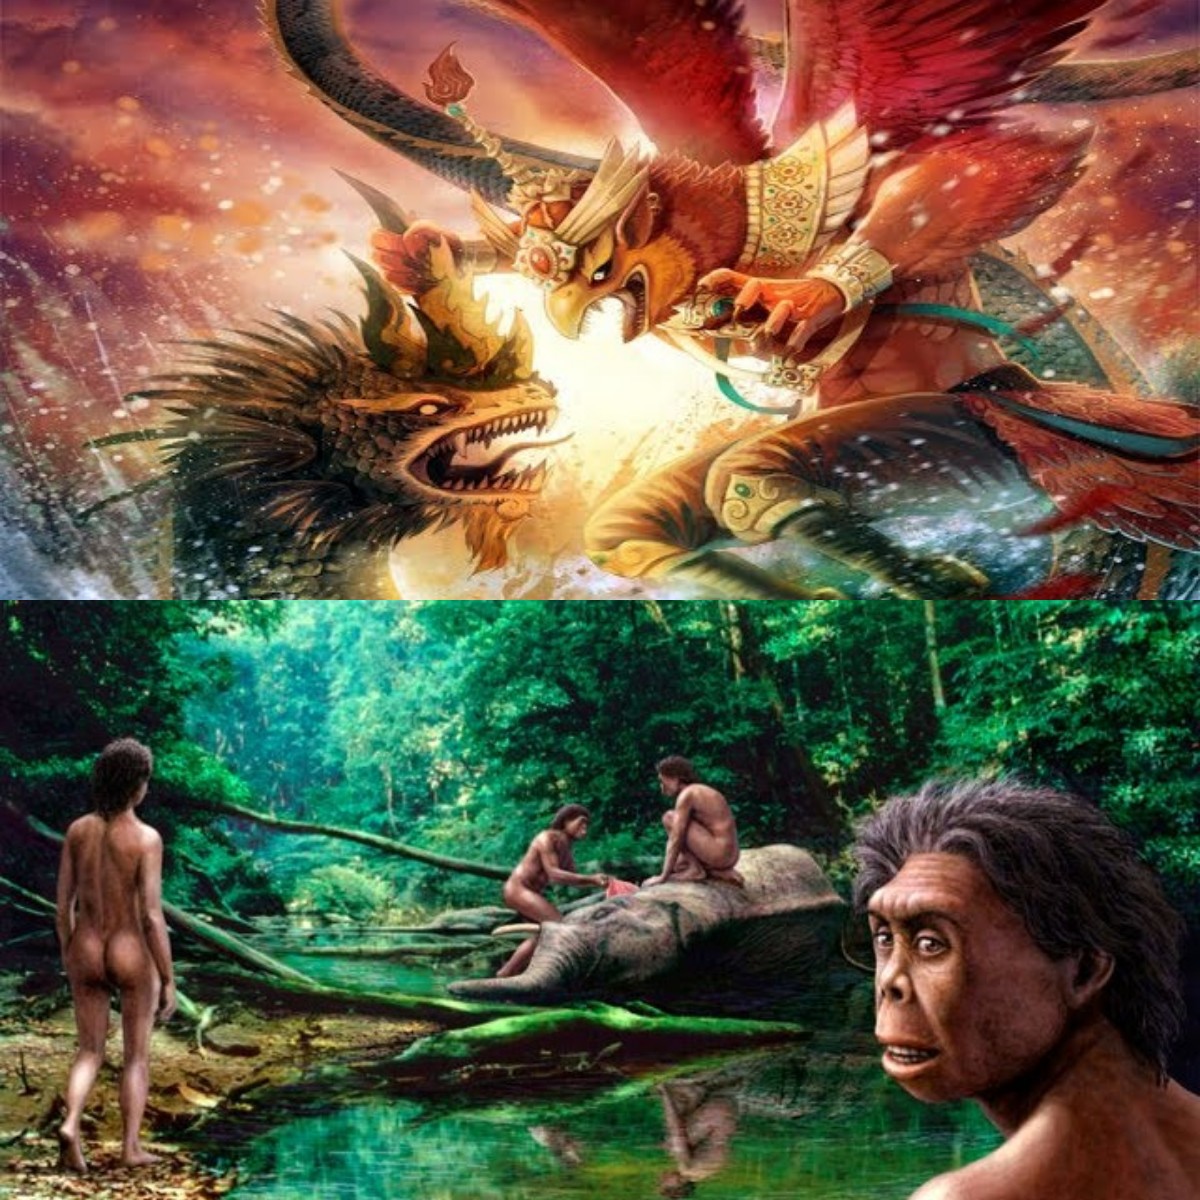 Kamu Wajib Tau! Ini 5 Makhluk Mitologi Yang Sangat Populer di Indonesia, Simak Faktanya Disini! 